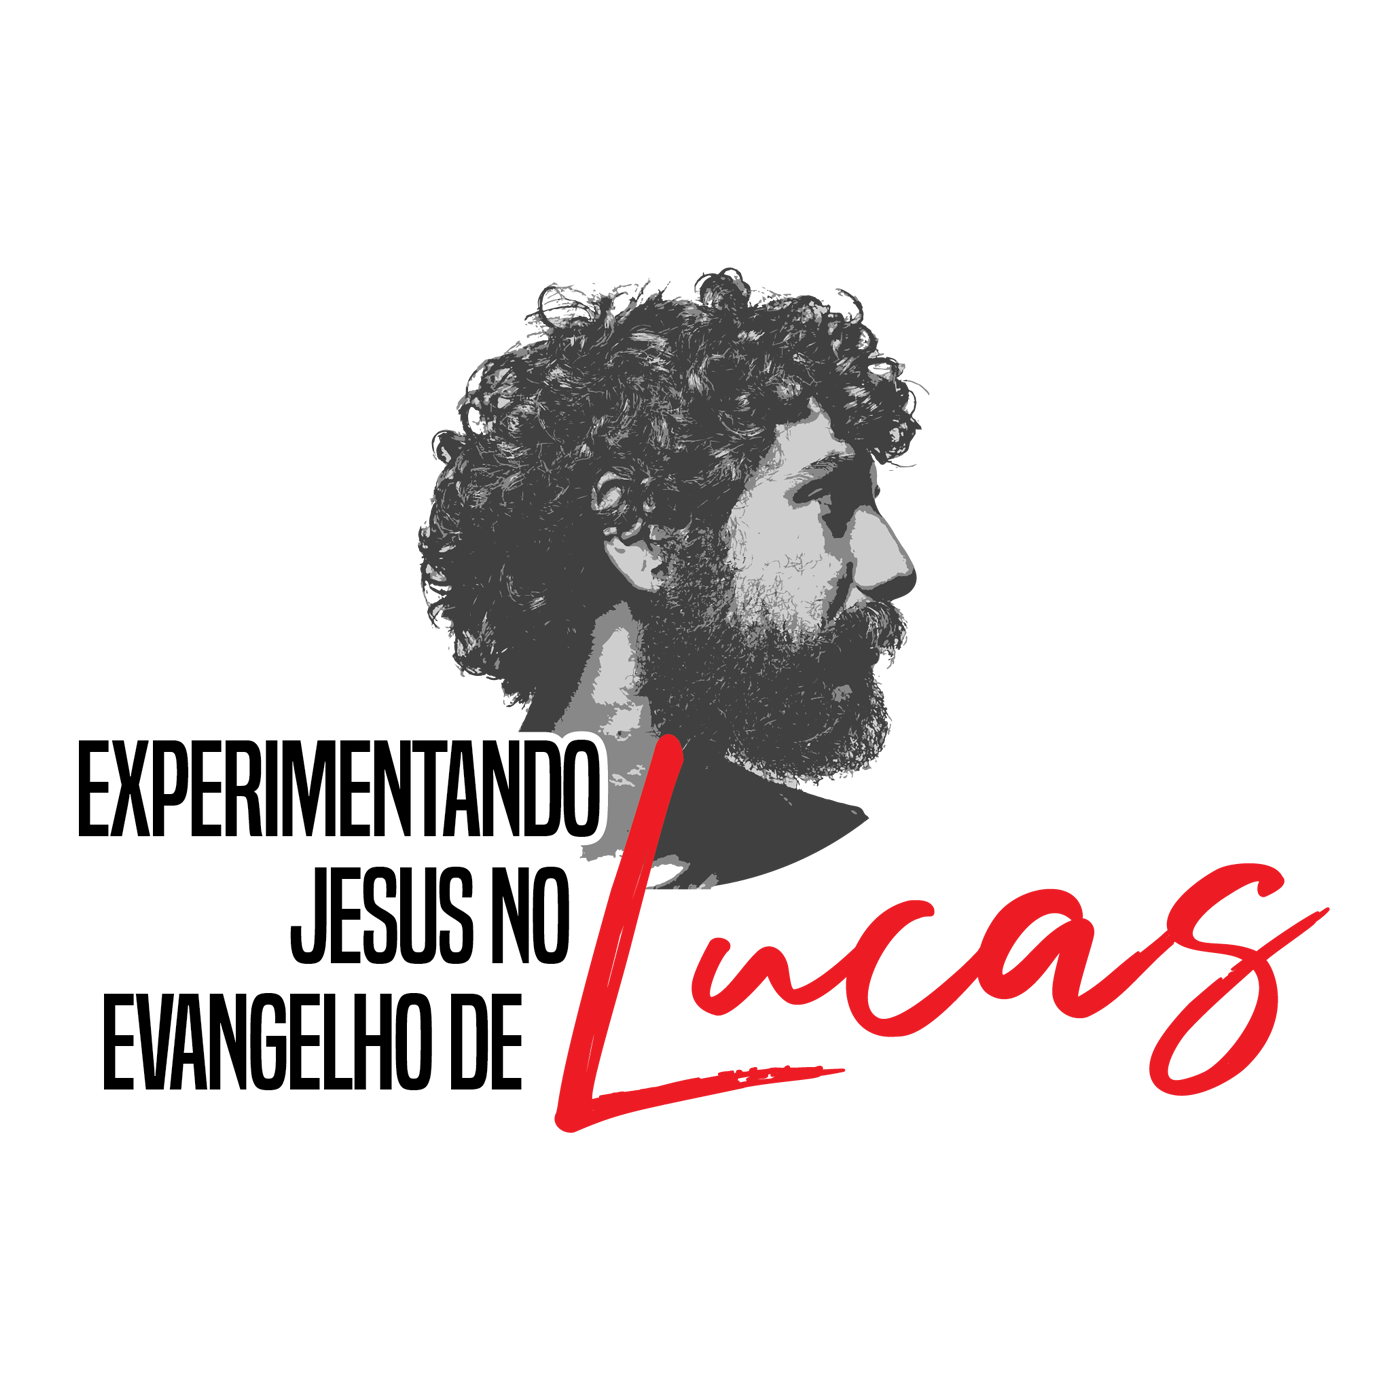 Lucas 6:29